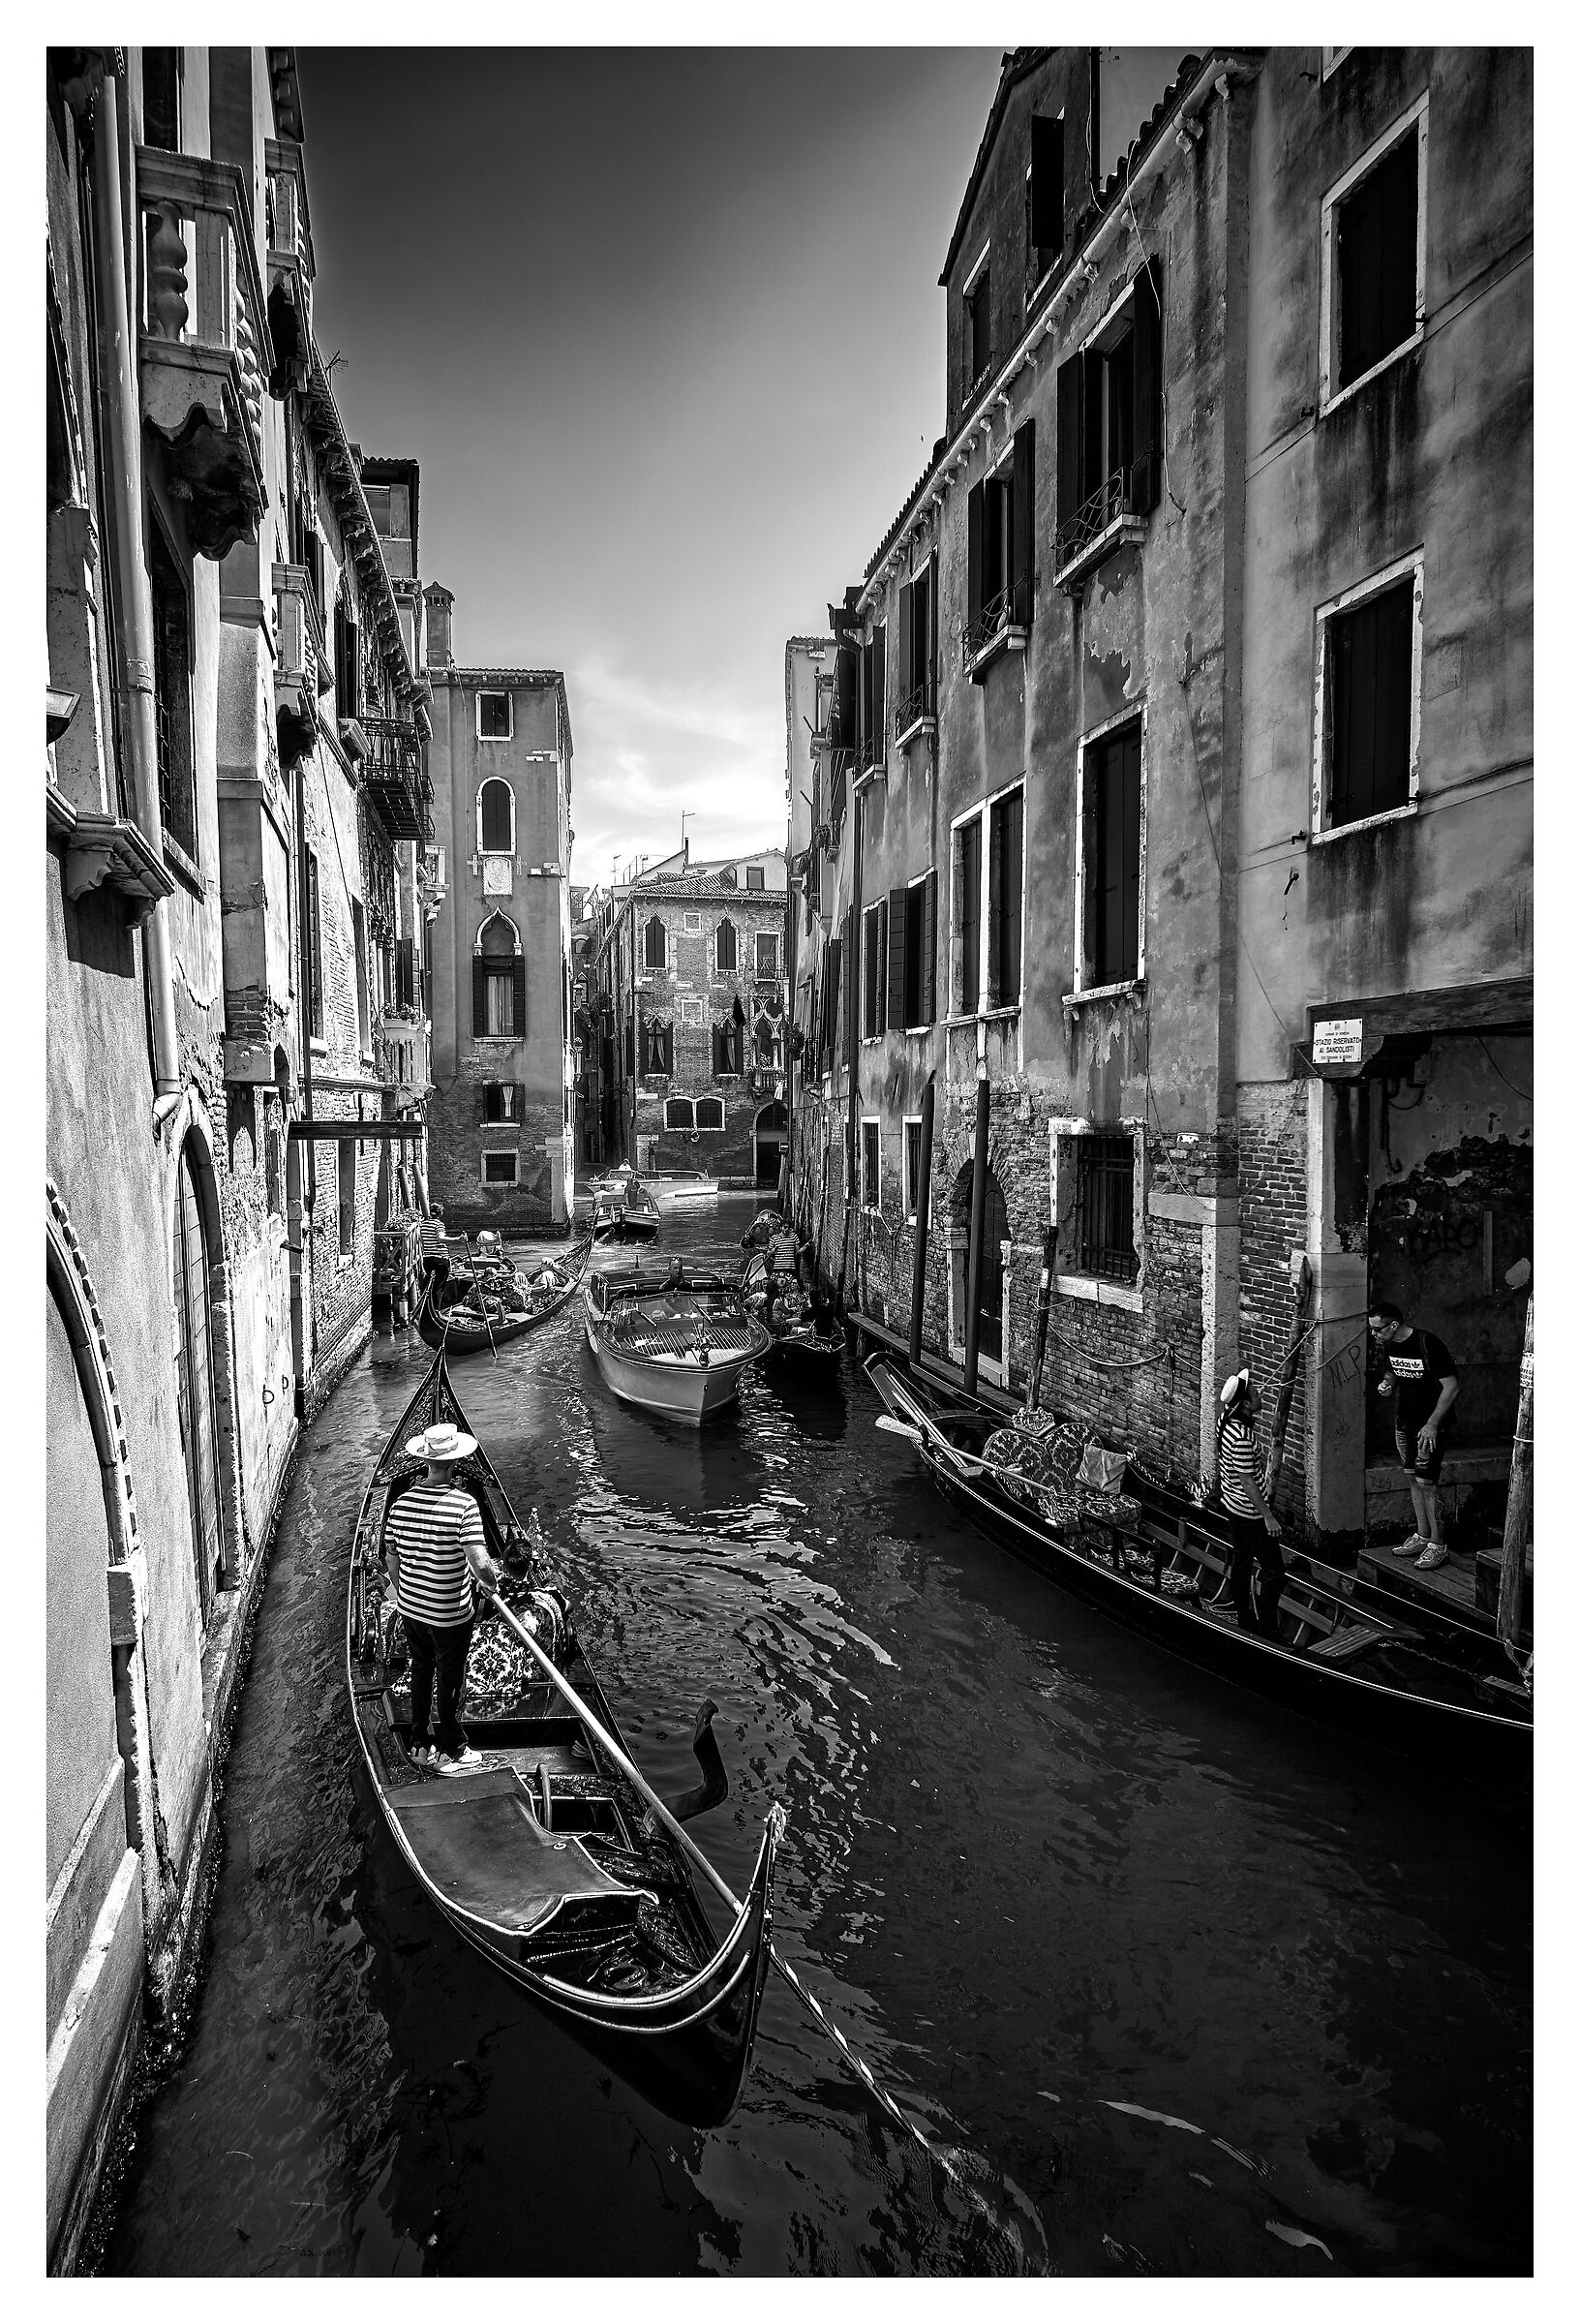 Venice bn...